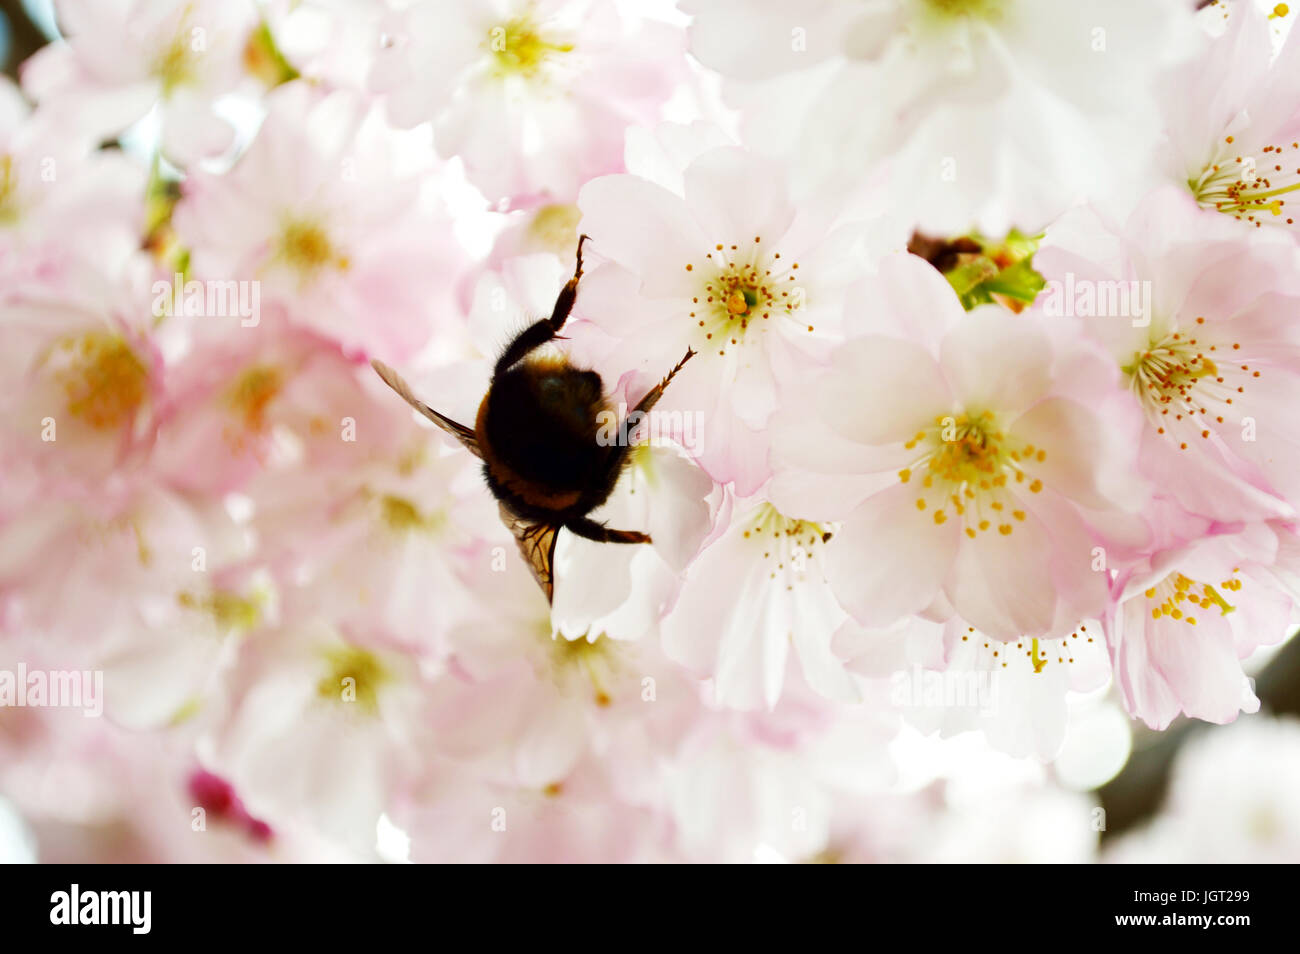 Close up d'un bourdon (Bombus terrestris) la collecte du pollen de fleurs de cerisier rose Banque D'Images